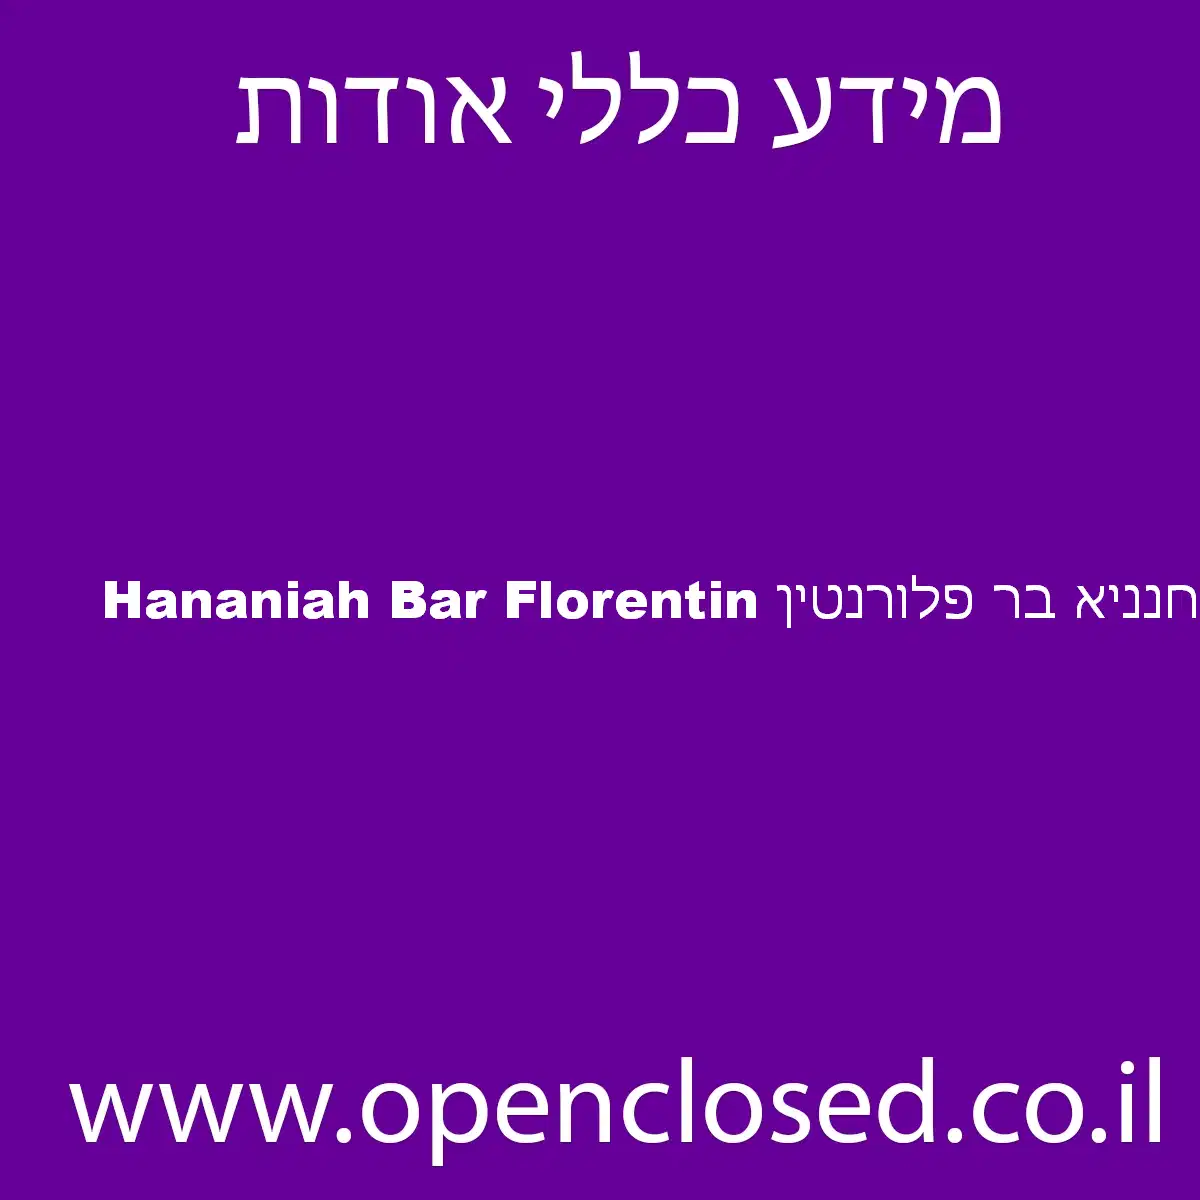 Hananiah Bar Florentin חנניא בר פלורנטין